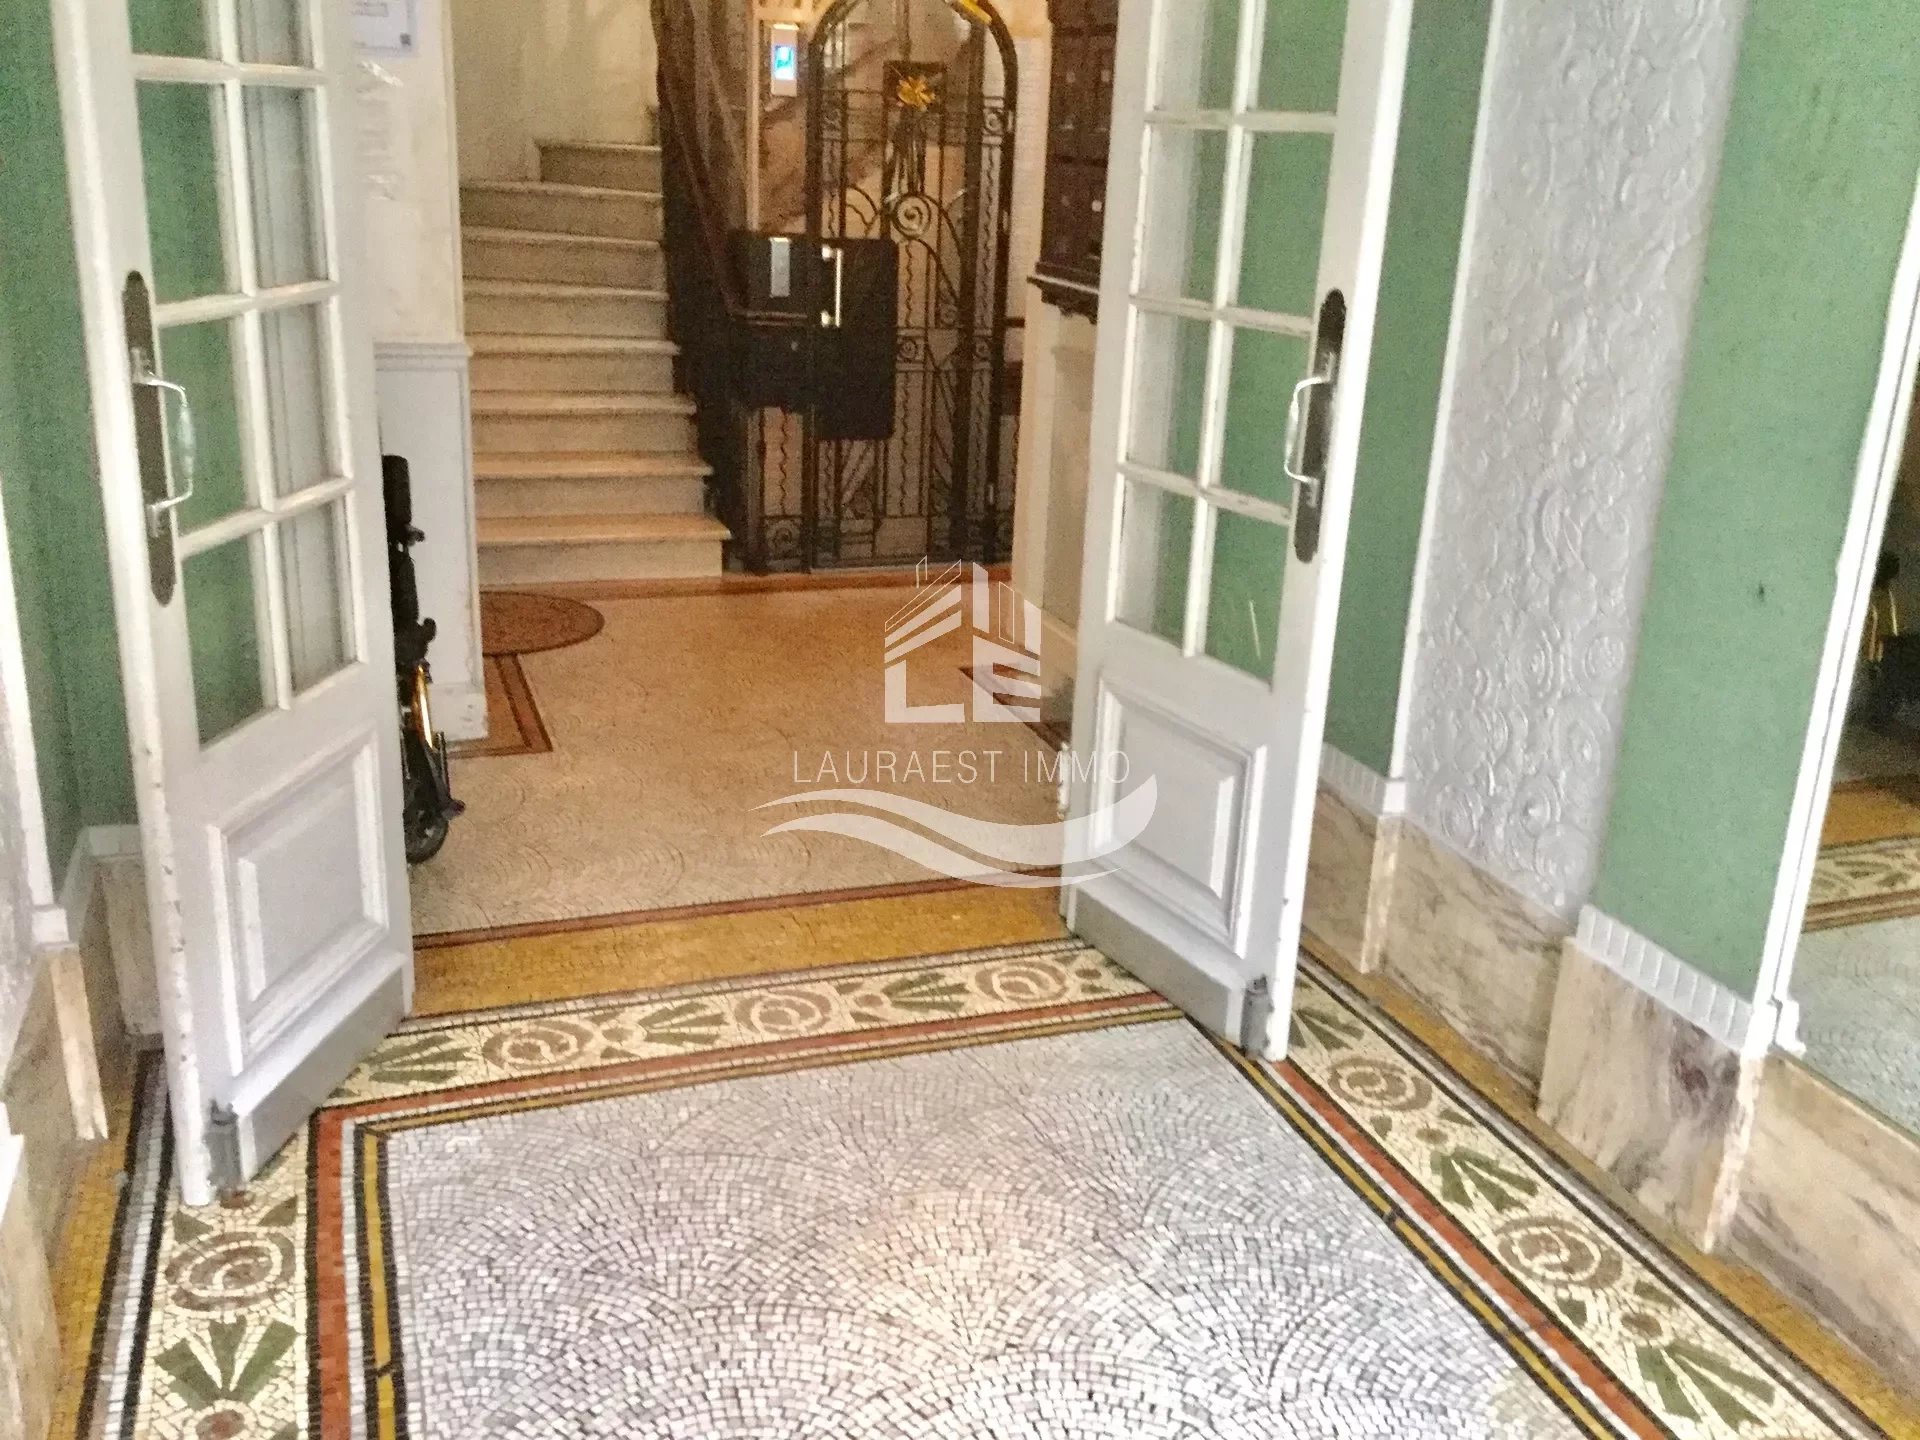 Entrance Carpet